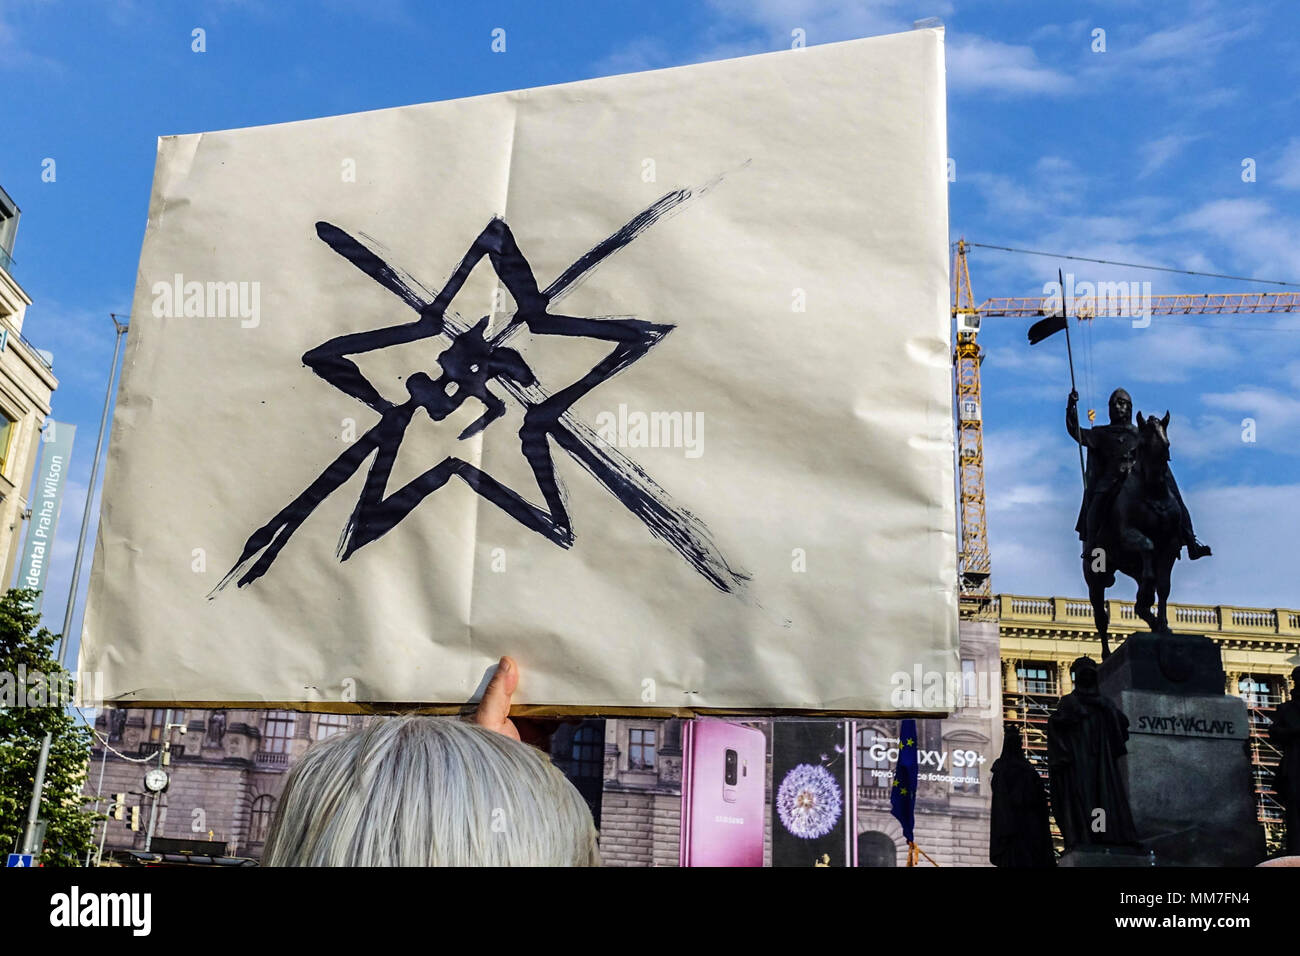 Prag, Tschechische Republik Demonstration gegen Premier Babis, Präsident Zeman und die Kommunisten, Symbole - Nazi, kommunistischen Star Stockfoto